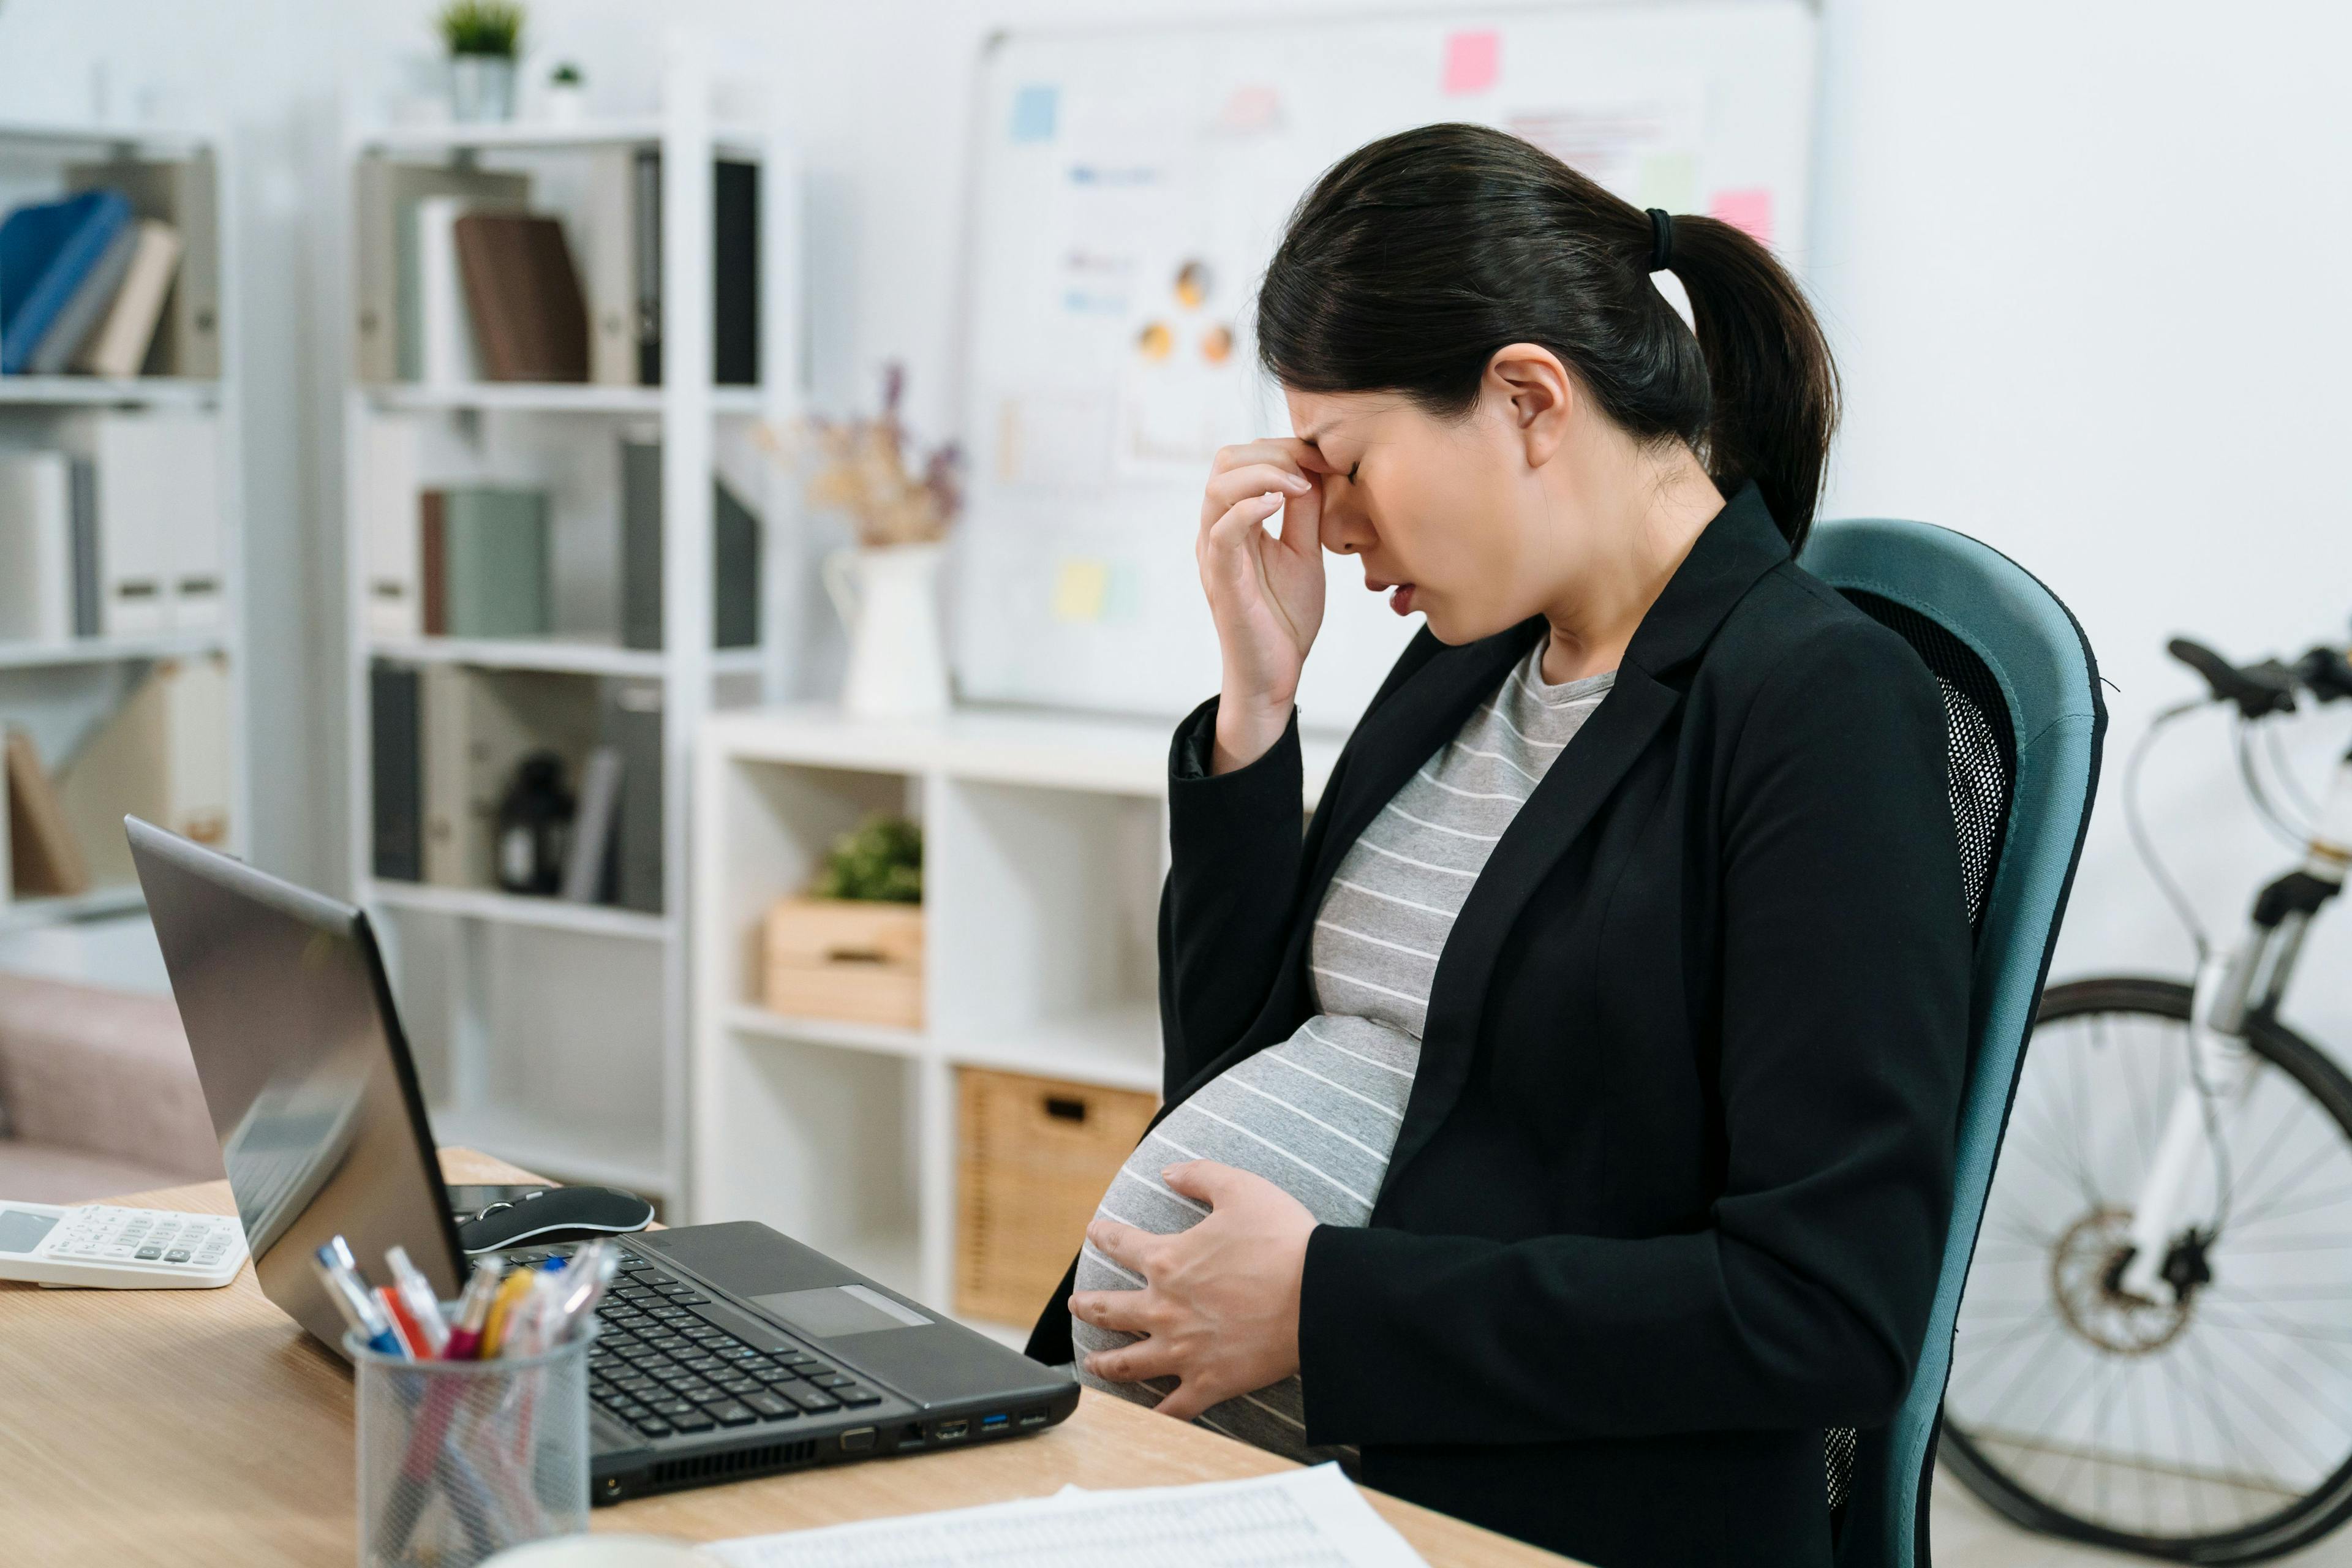 Prenatal maternal distress impairs newborn amygdala growth